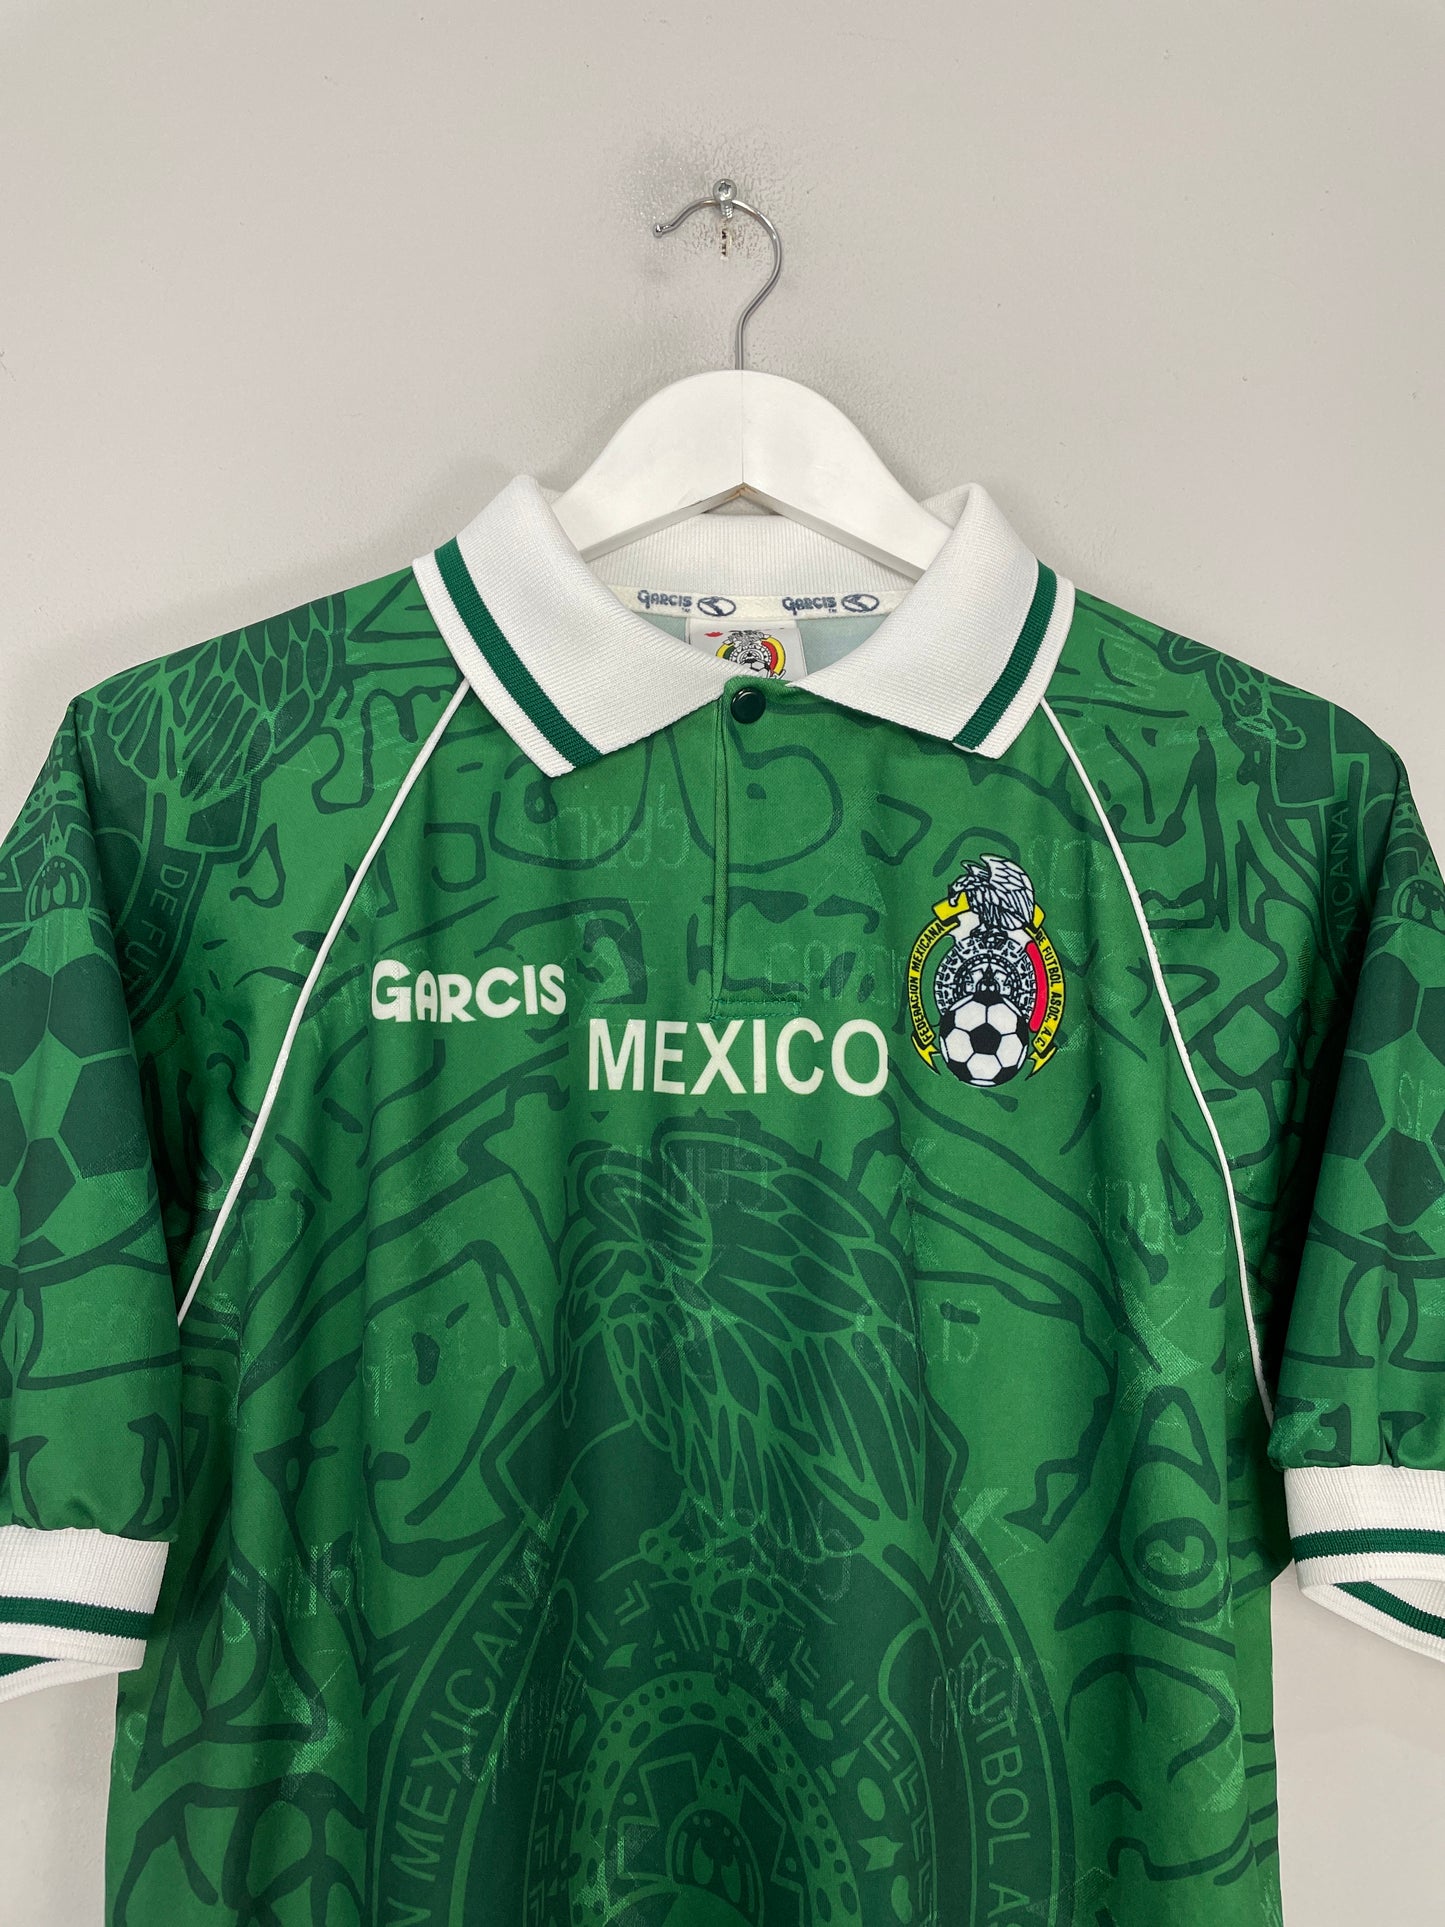 1999 MEXICO HOME SHIRT (M) GARCIS